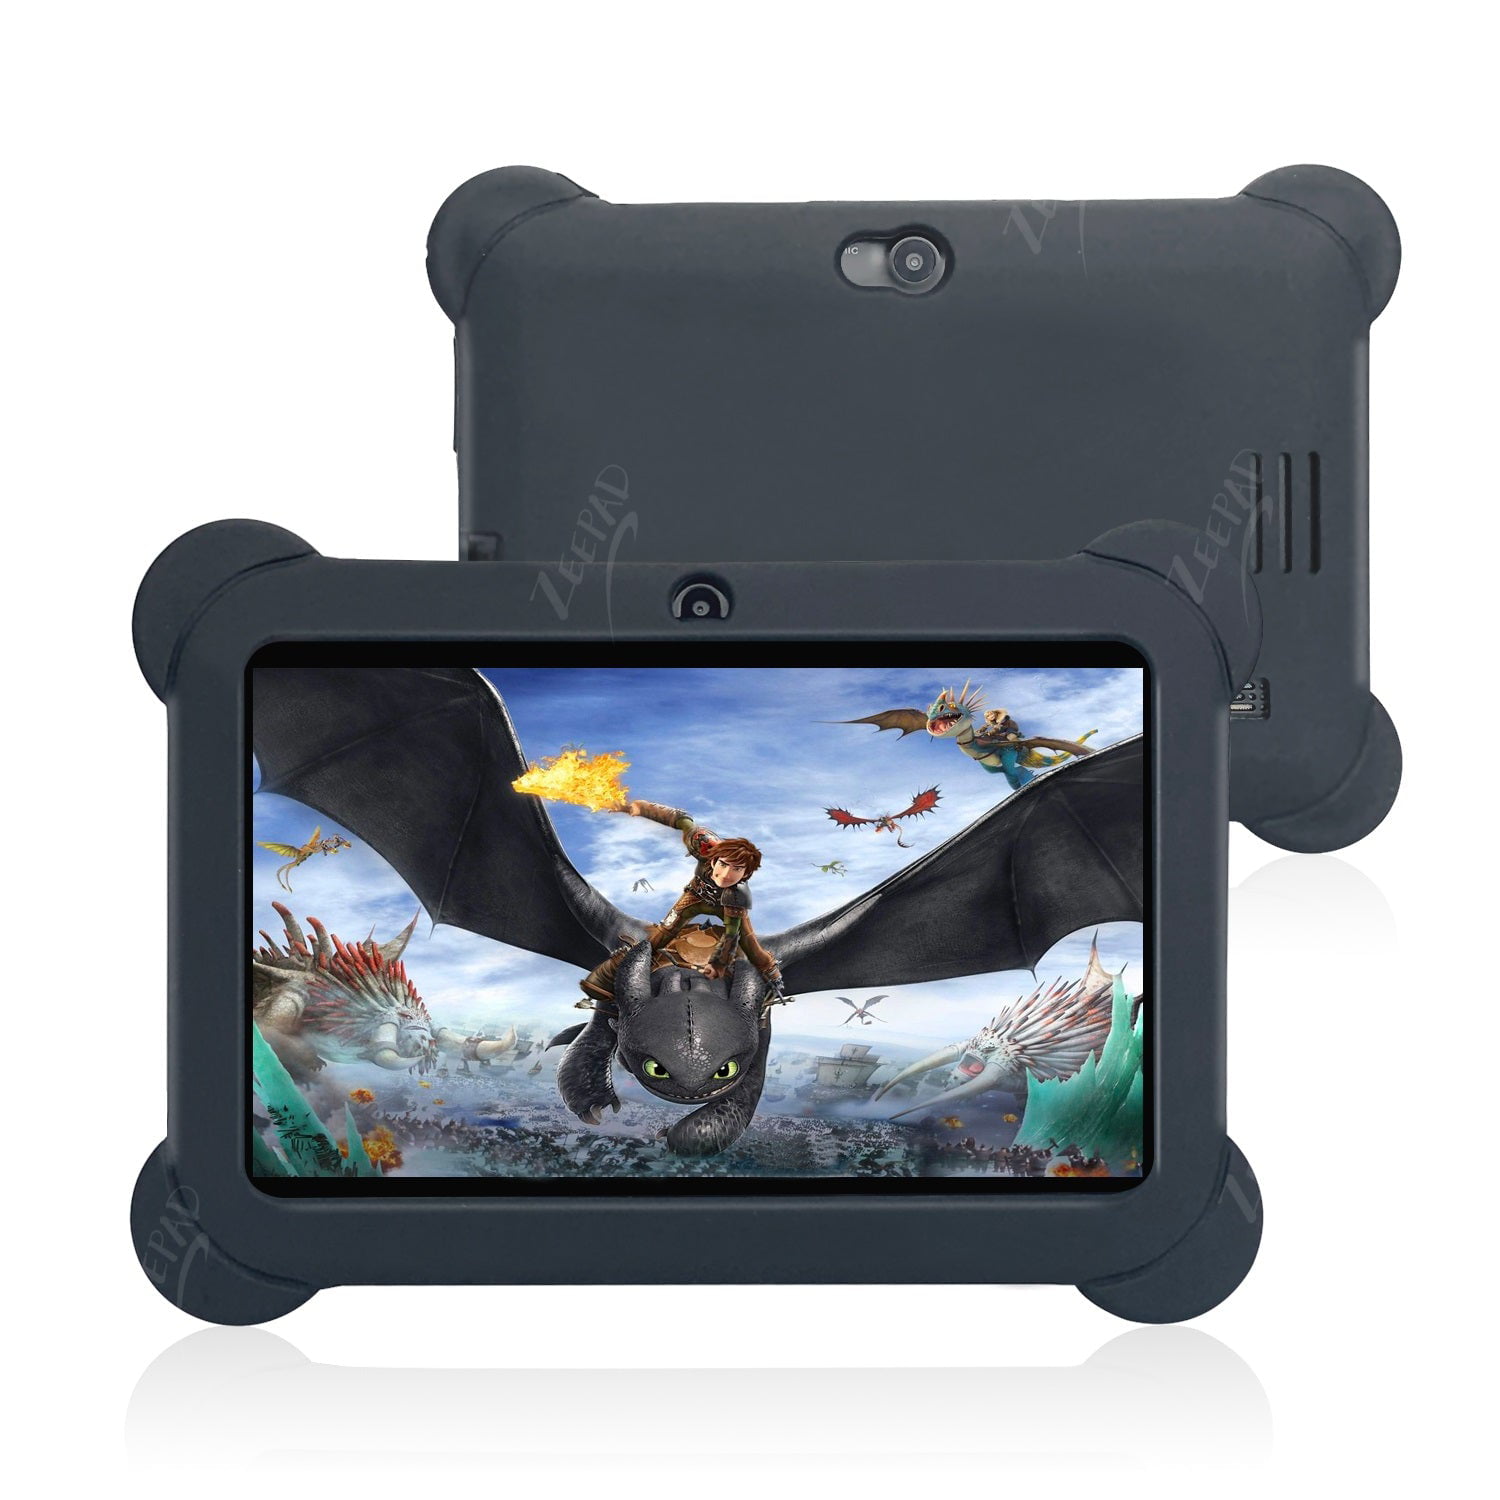 Tablet infantil, tablet Veidoo 7 polegadas, Android Tablet PC, 1 GB de RAM  16 GB de ROM, tela de proteção ocular de segurança, Wi-Fi, Bluetooth,  câmera dupla, educacional, jogos, aplicativo de controle